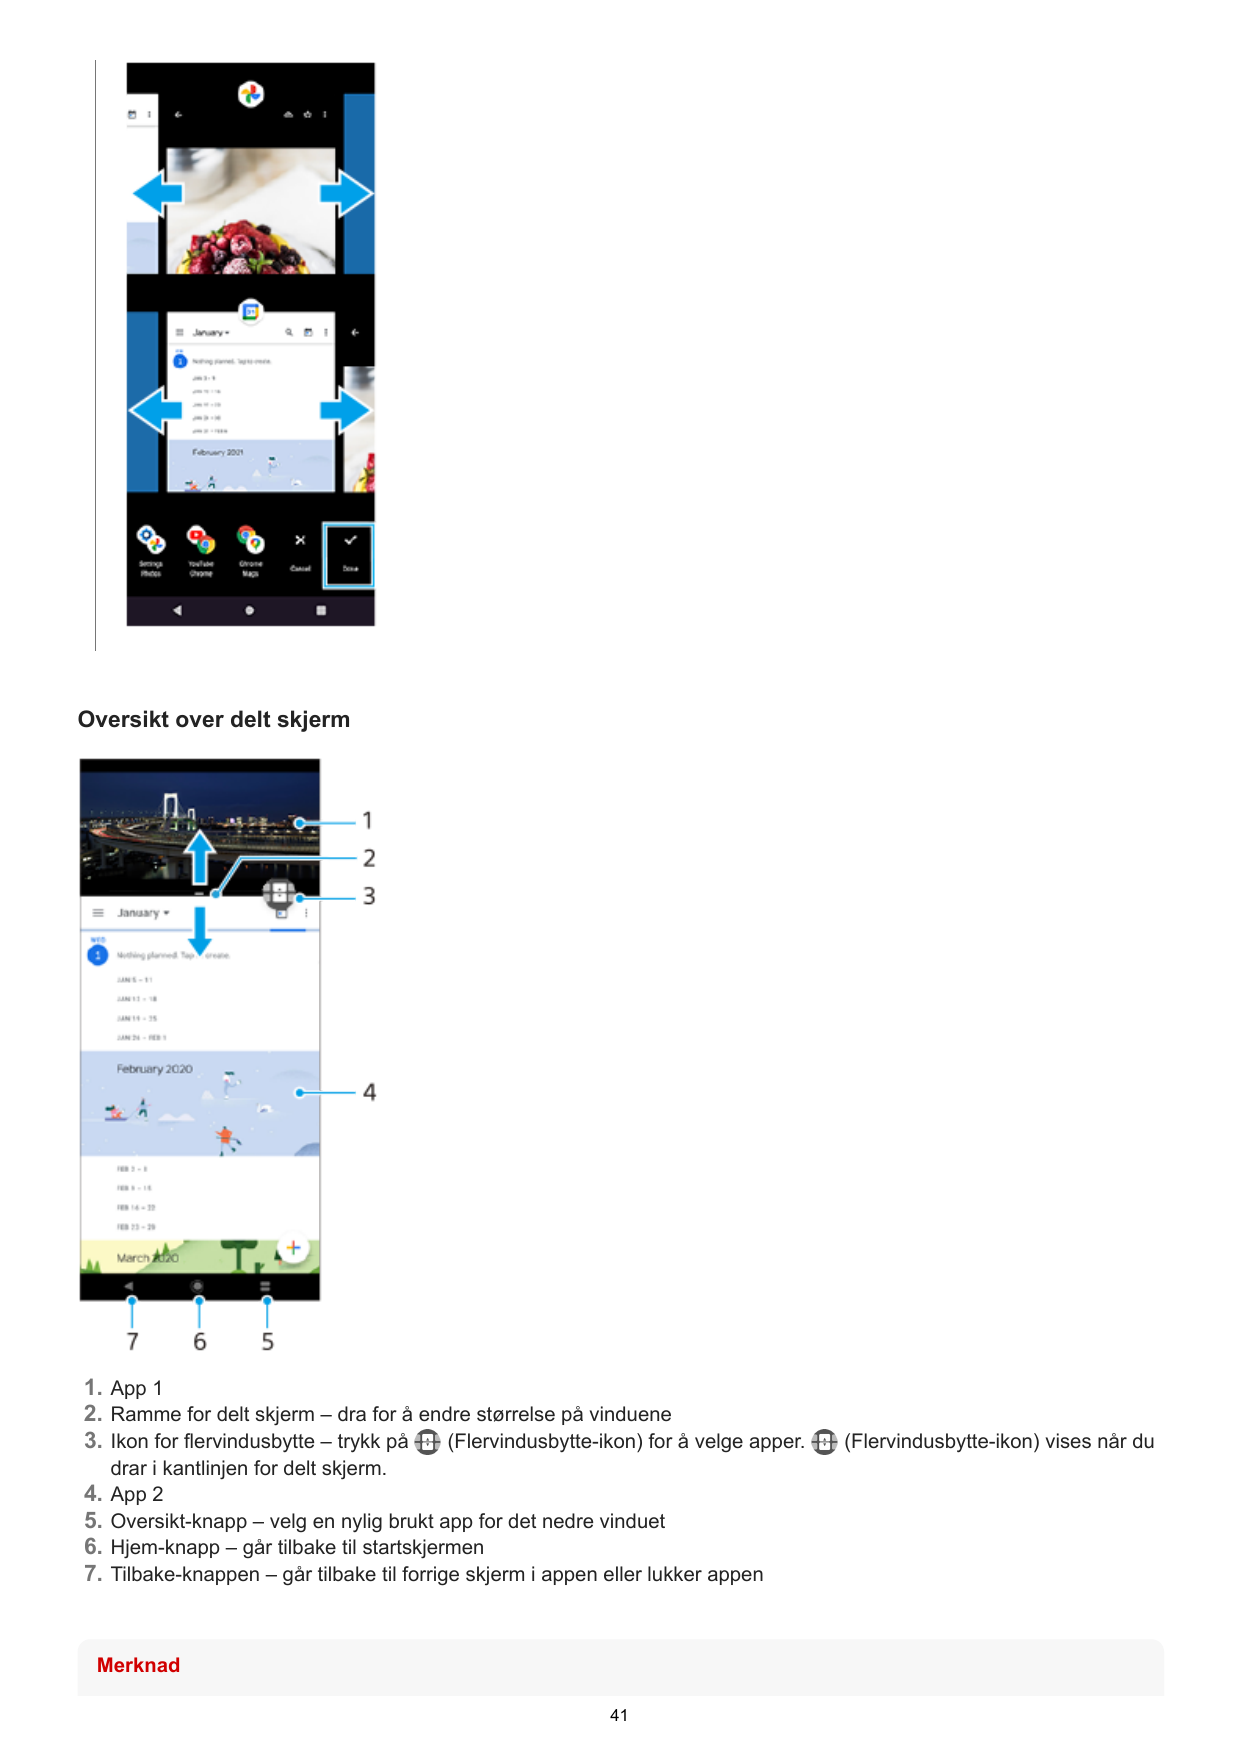 Oversikt over delt skjerm1. App 12. Ramme for delt skjerm – dra for å endre størrelse på vinduene3. Ikon for flervindusbytte – t